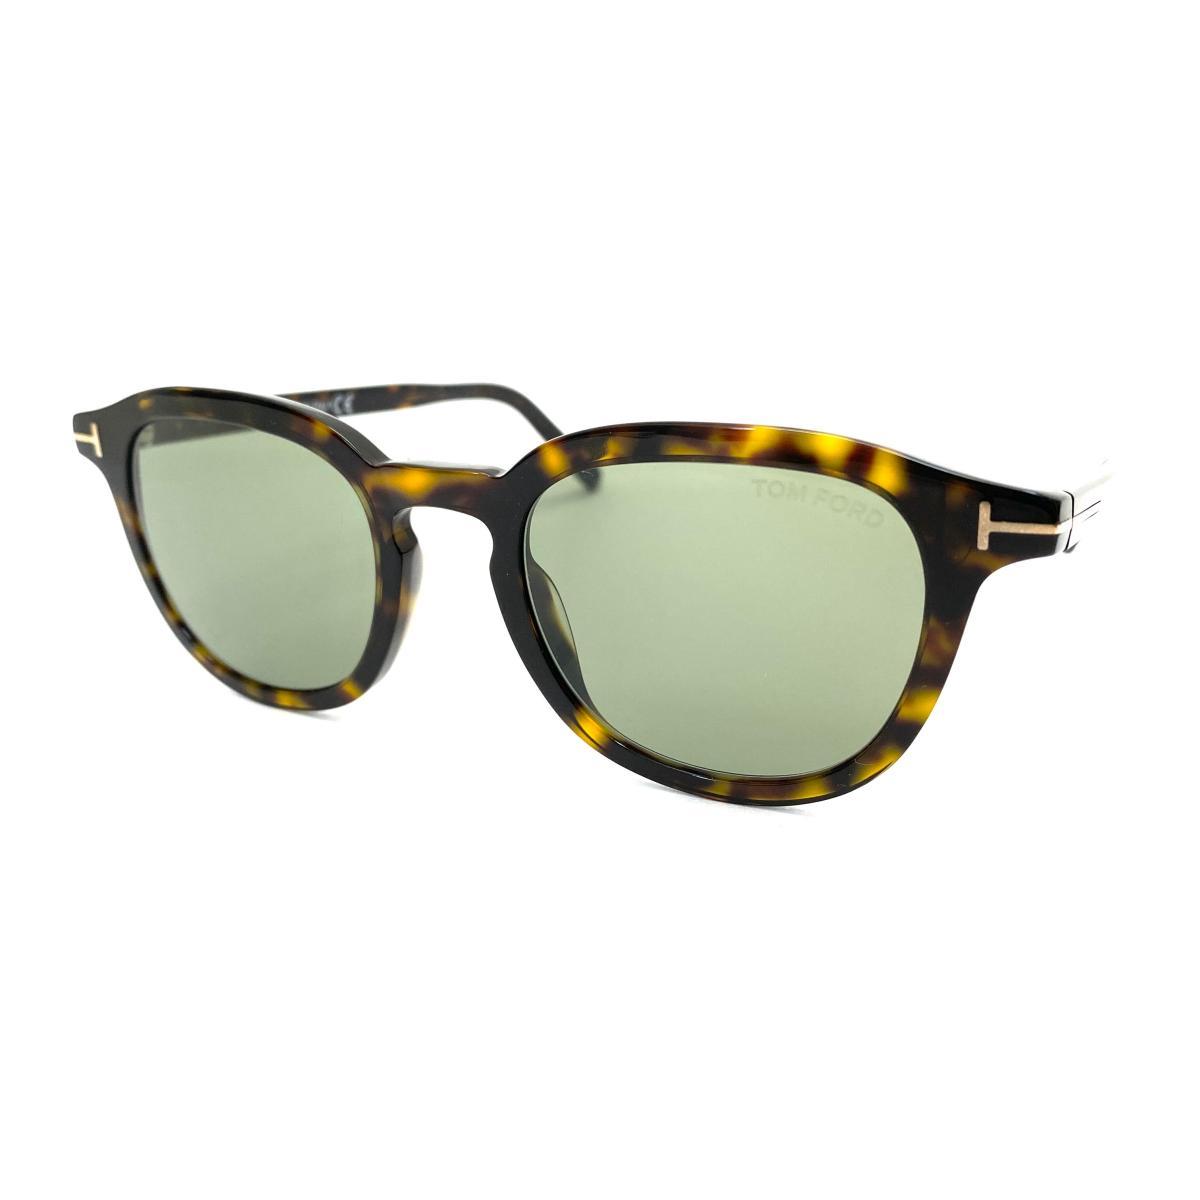 良好◆TOM FORD トムフォード サングラス◆TF816 ブラウン レディース メンズ メガネ 眼鏡 サングラス sunglasses 服飾小物 KI1004